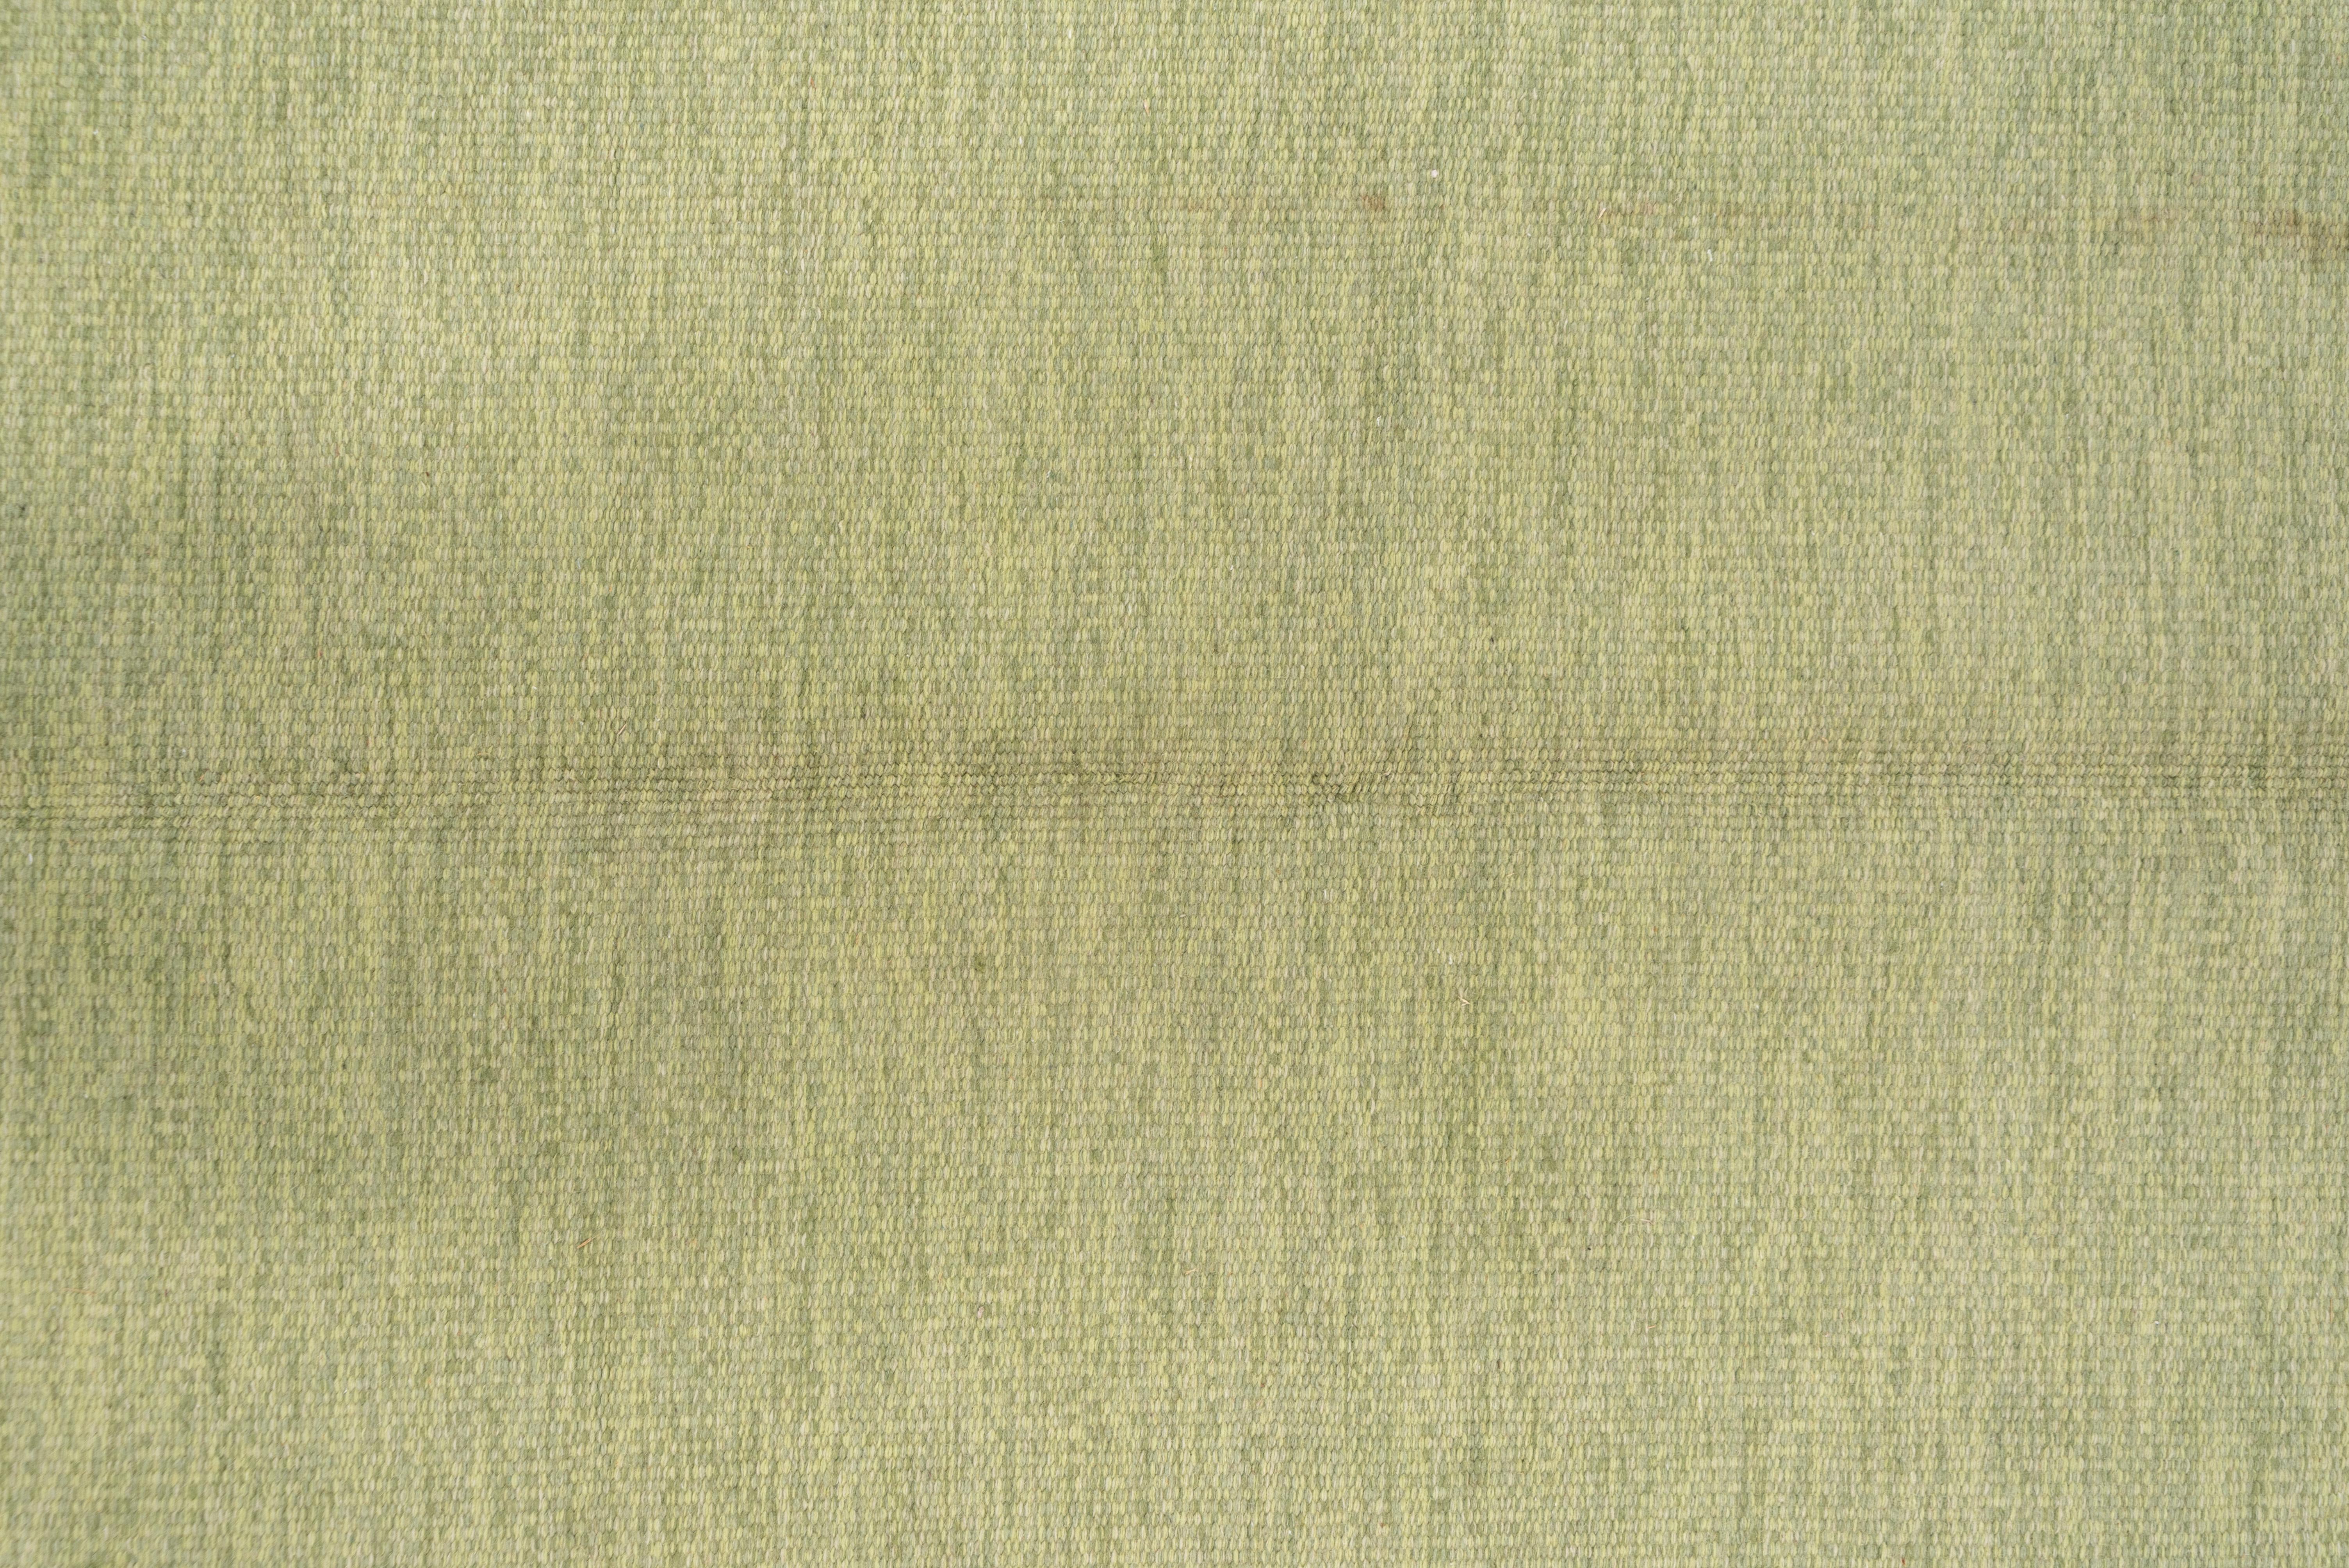 Hand-Woven Scandinavian Rollaken Flatweave Rug, Light Green Open Field, Circa 1950s